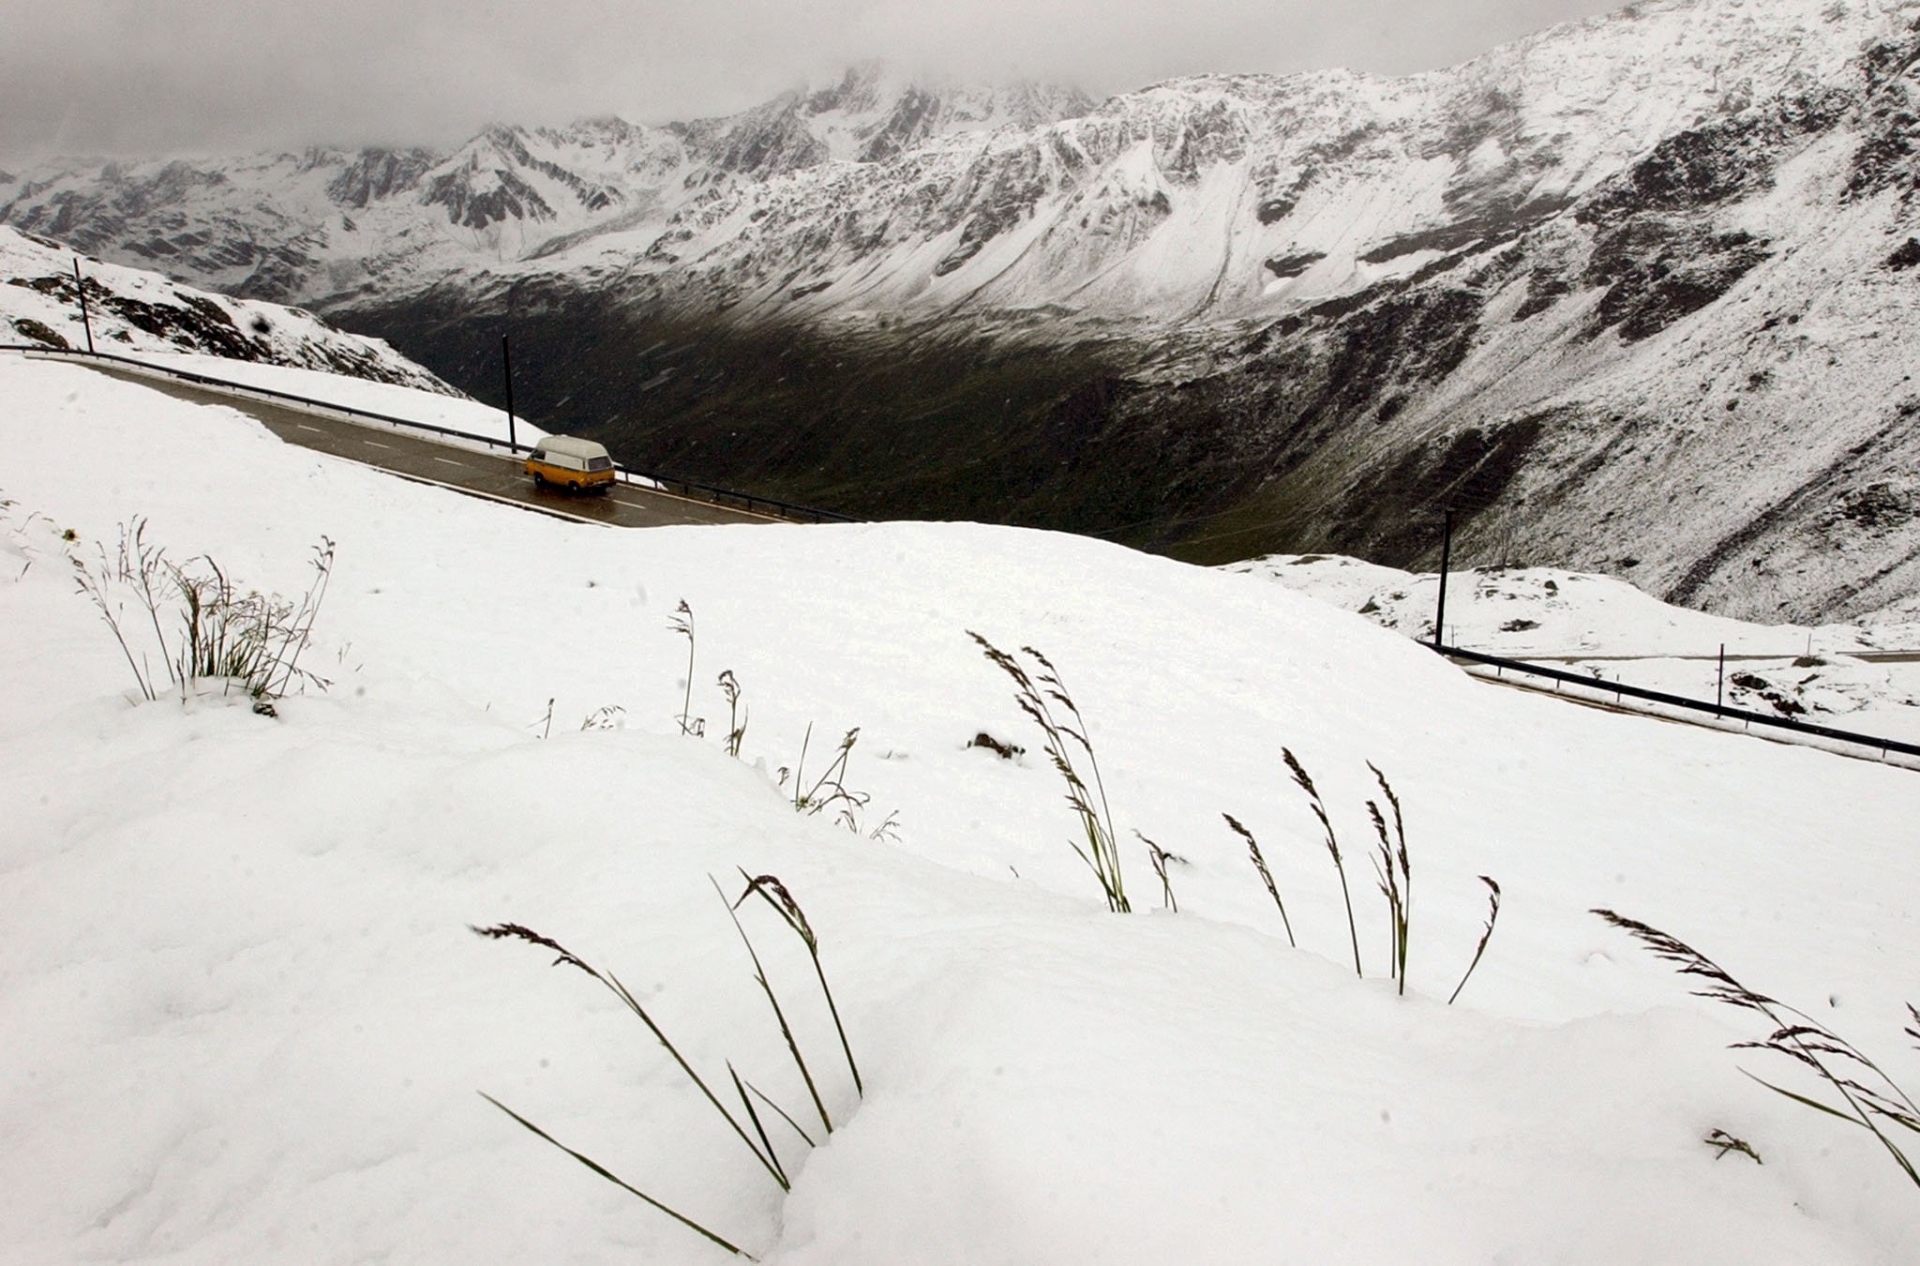 Le col du Nüfenen, sous la neige. Image d'illustration